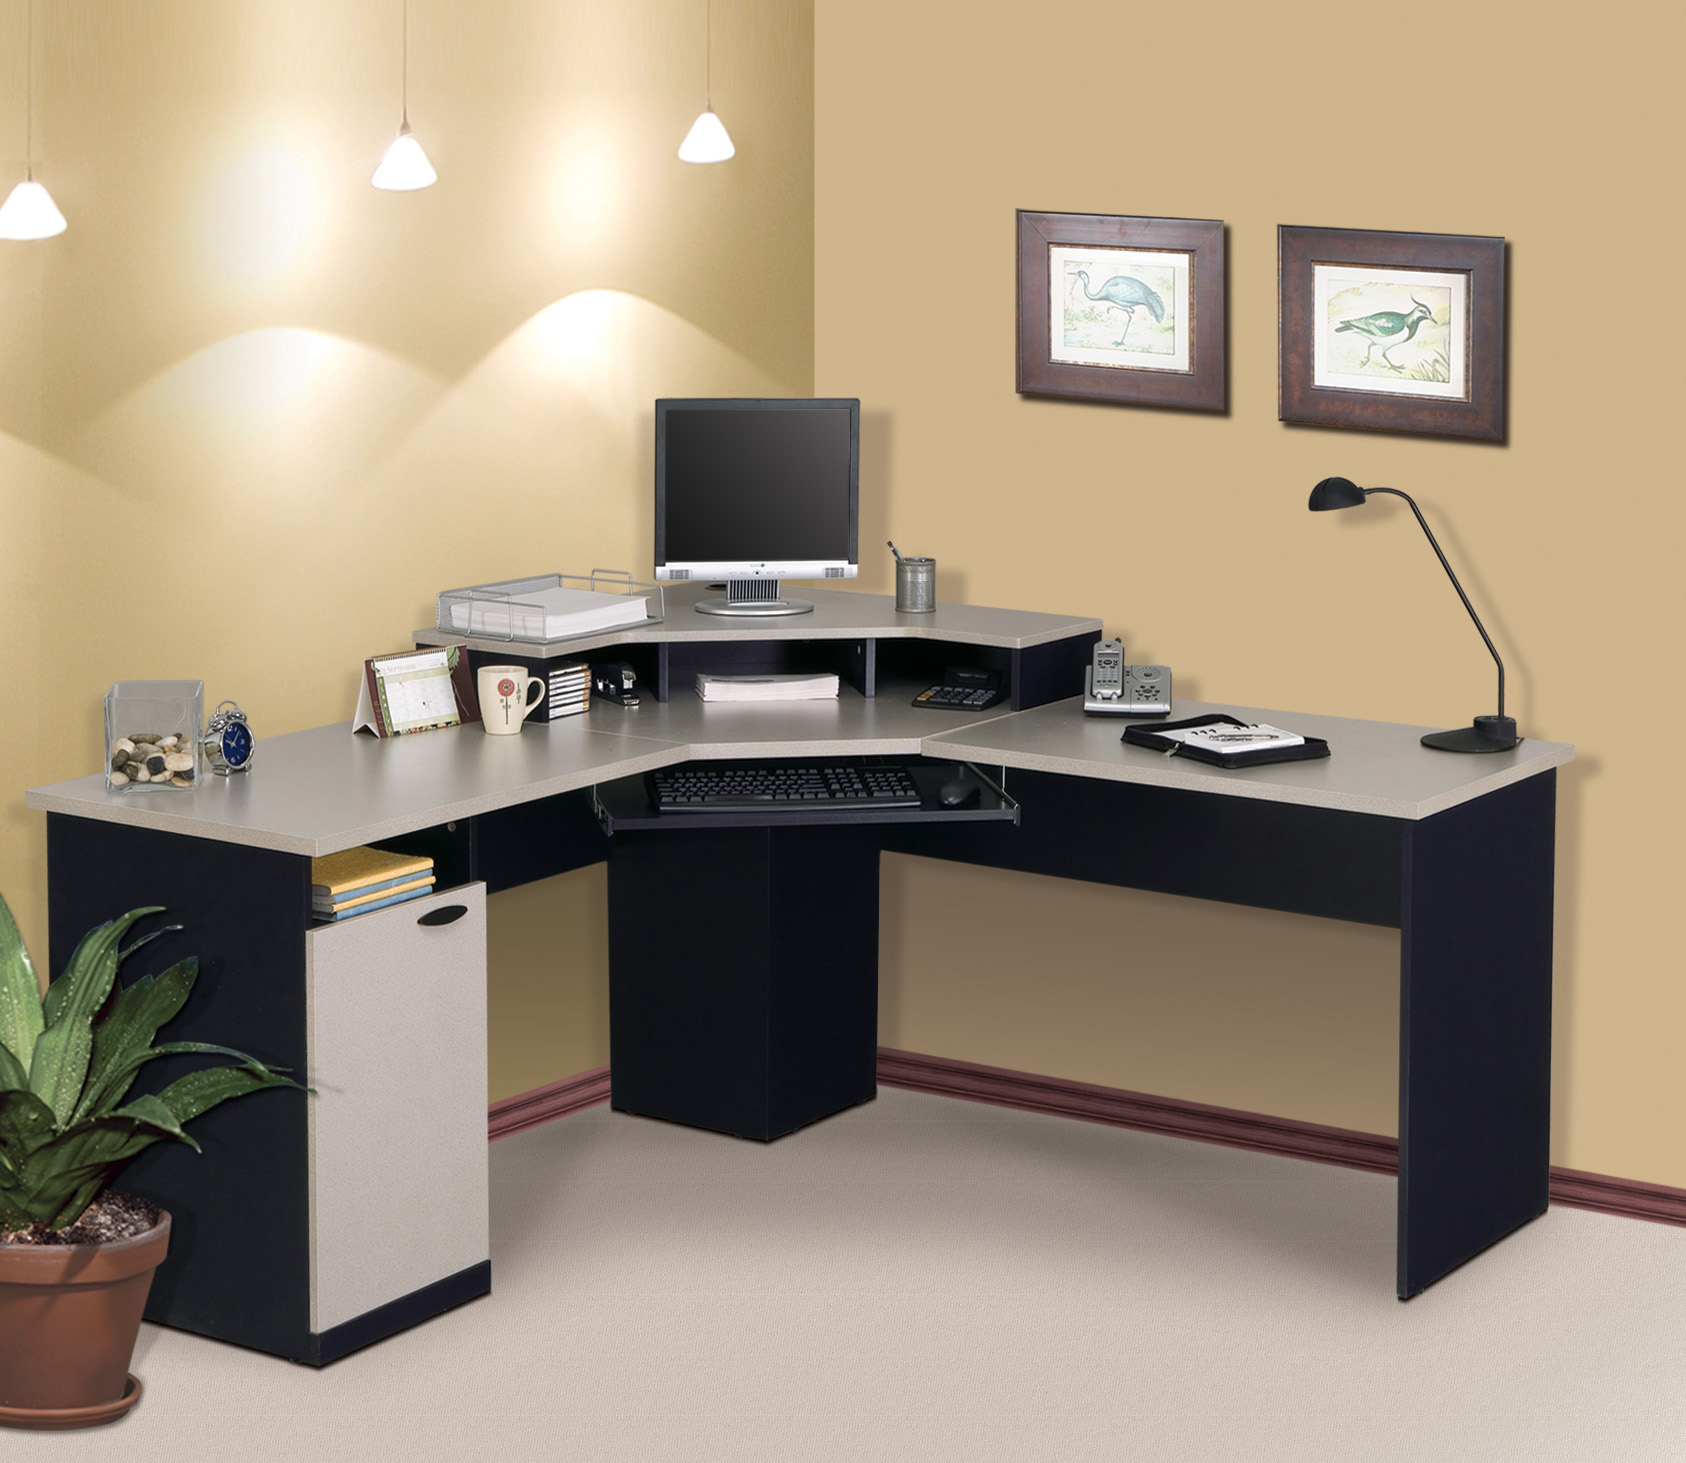 47” Industrial Corner Desk Large Workstation Space-Saving Desk for Home Office HILERO L-Shaped Computer Desk Rustic Brown 